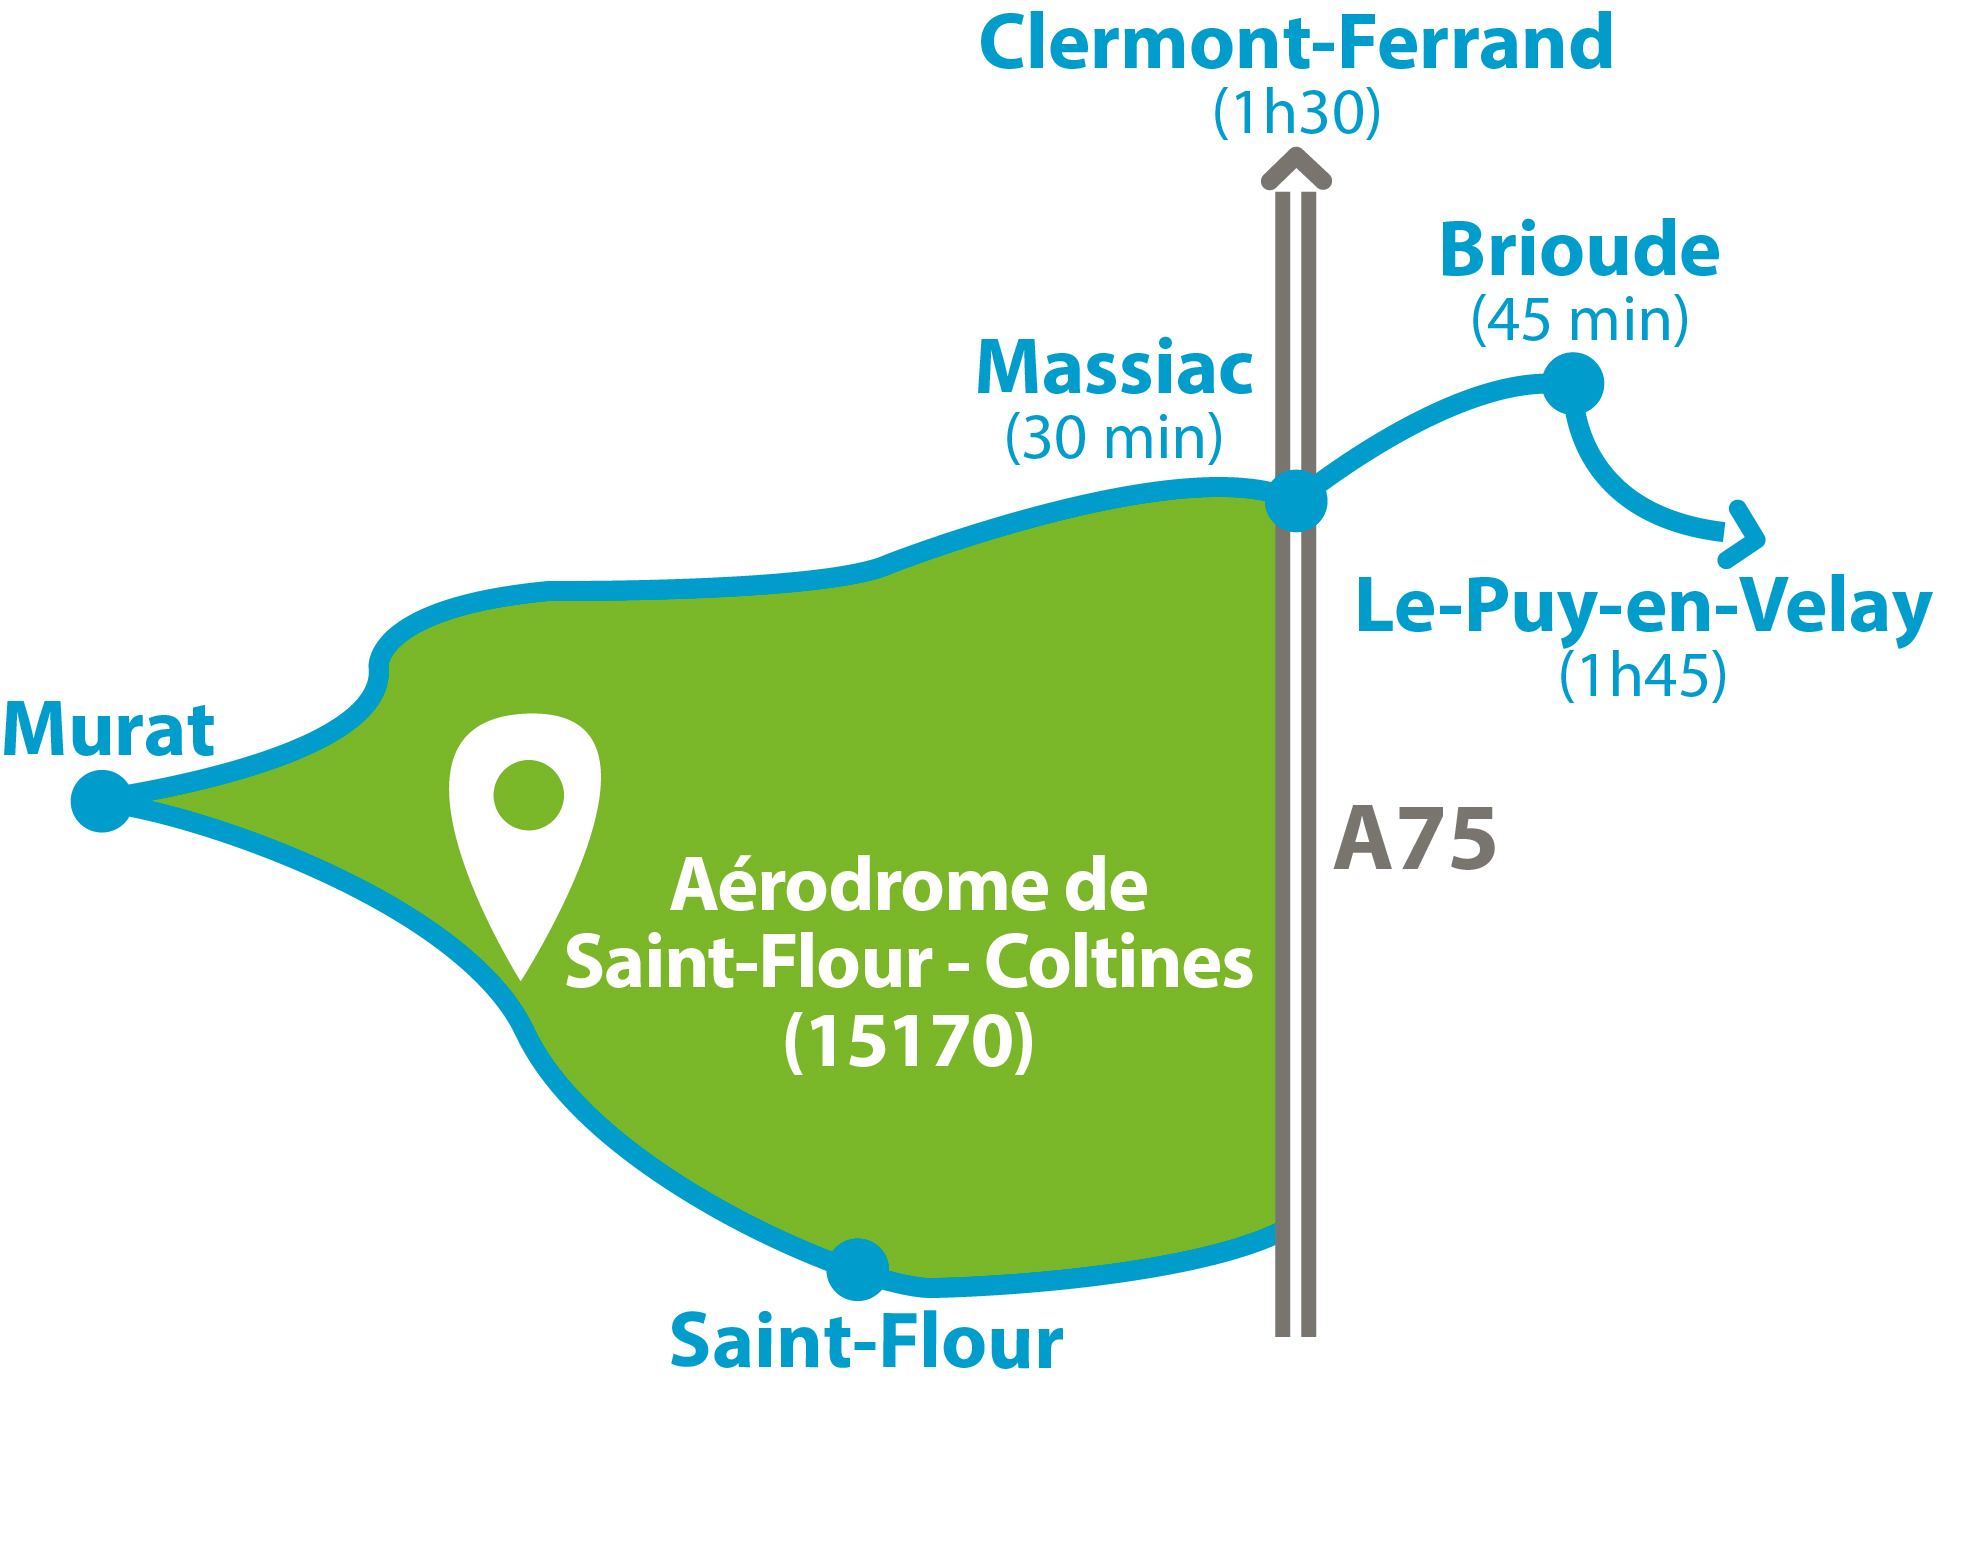 Ecole Mobile en Auvergne - Aérodrome de Saint-Flour/Coltines (15170)